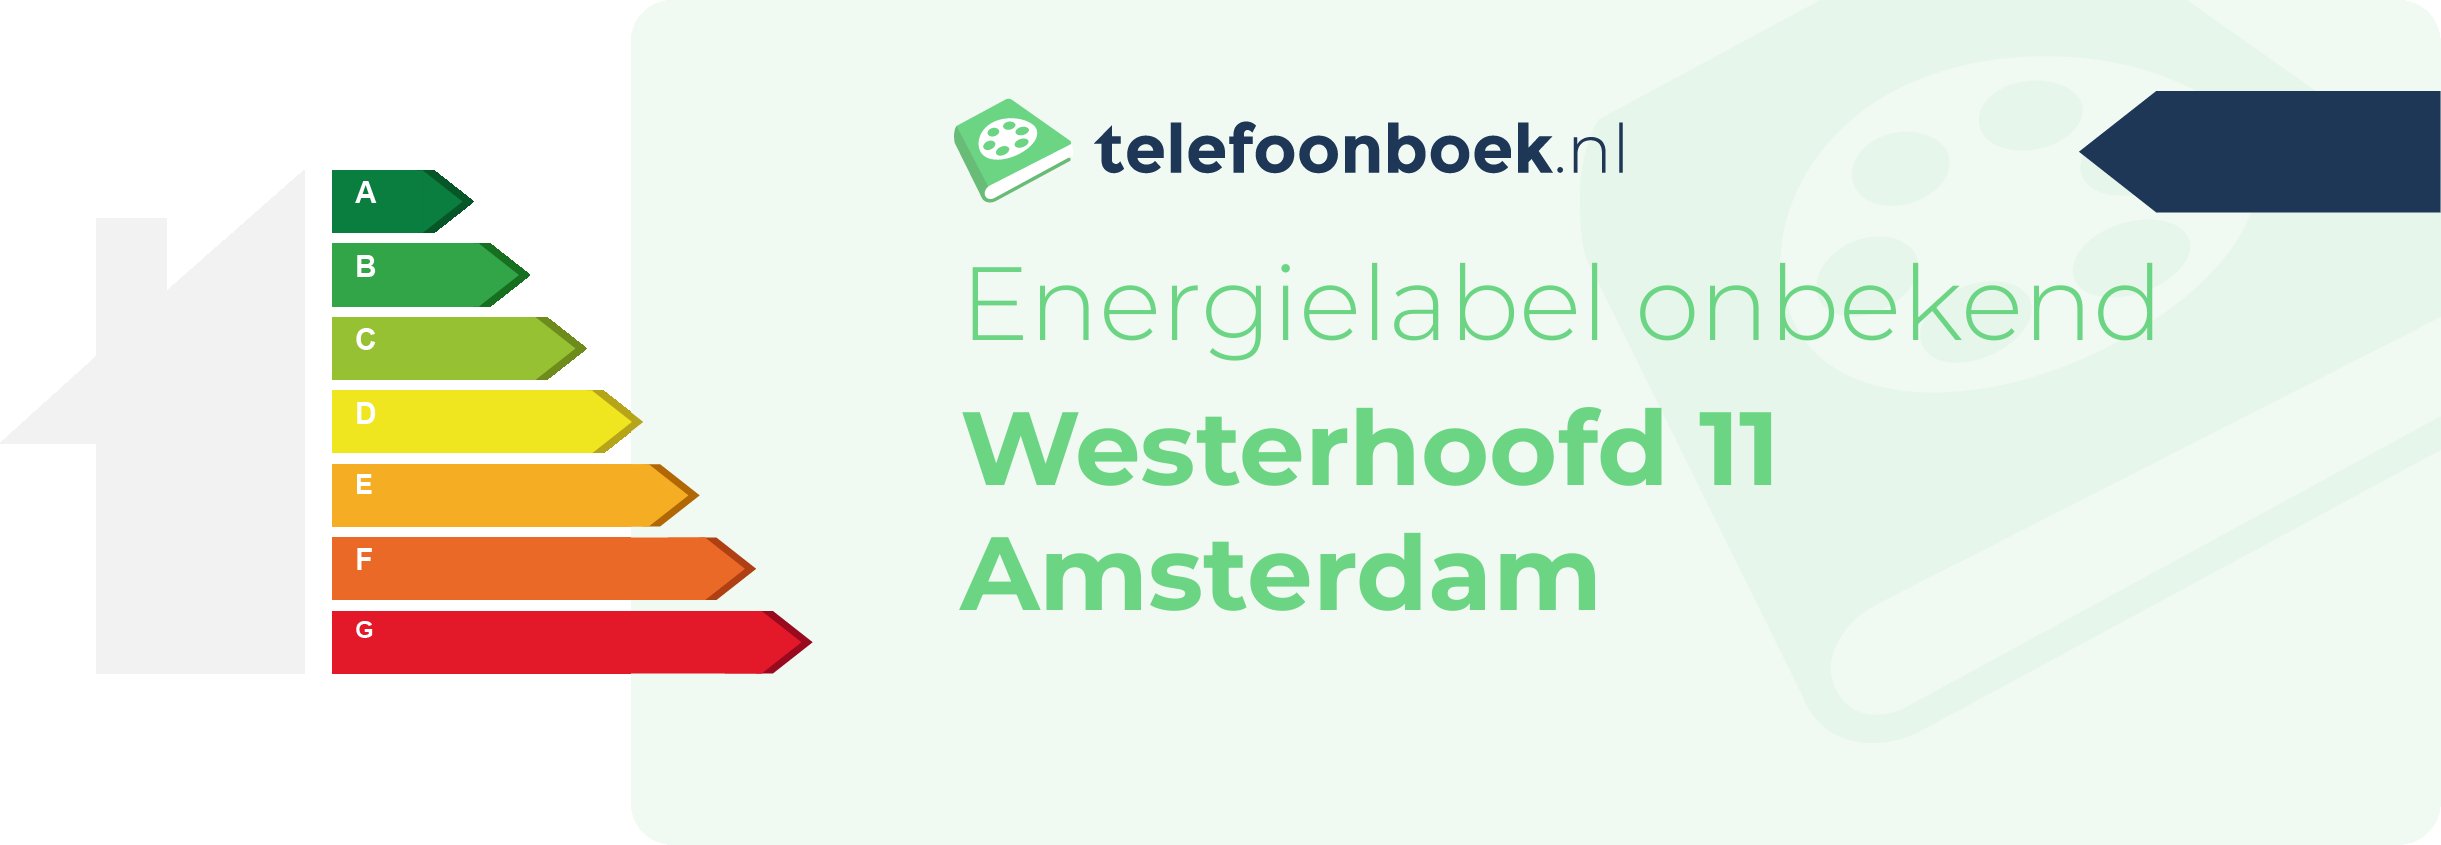 Energielabel Westerhoofd 11 Amsterdam